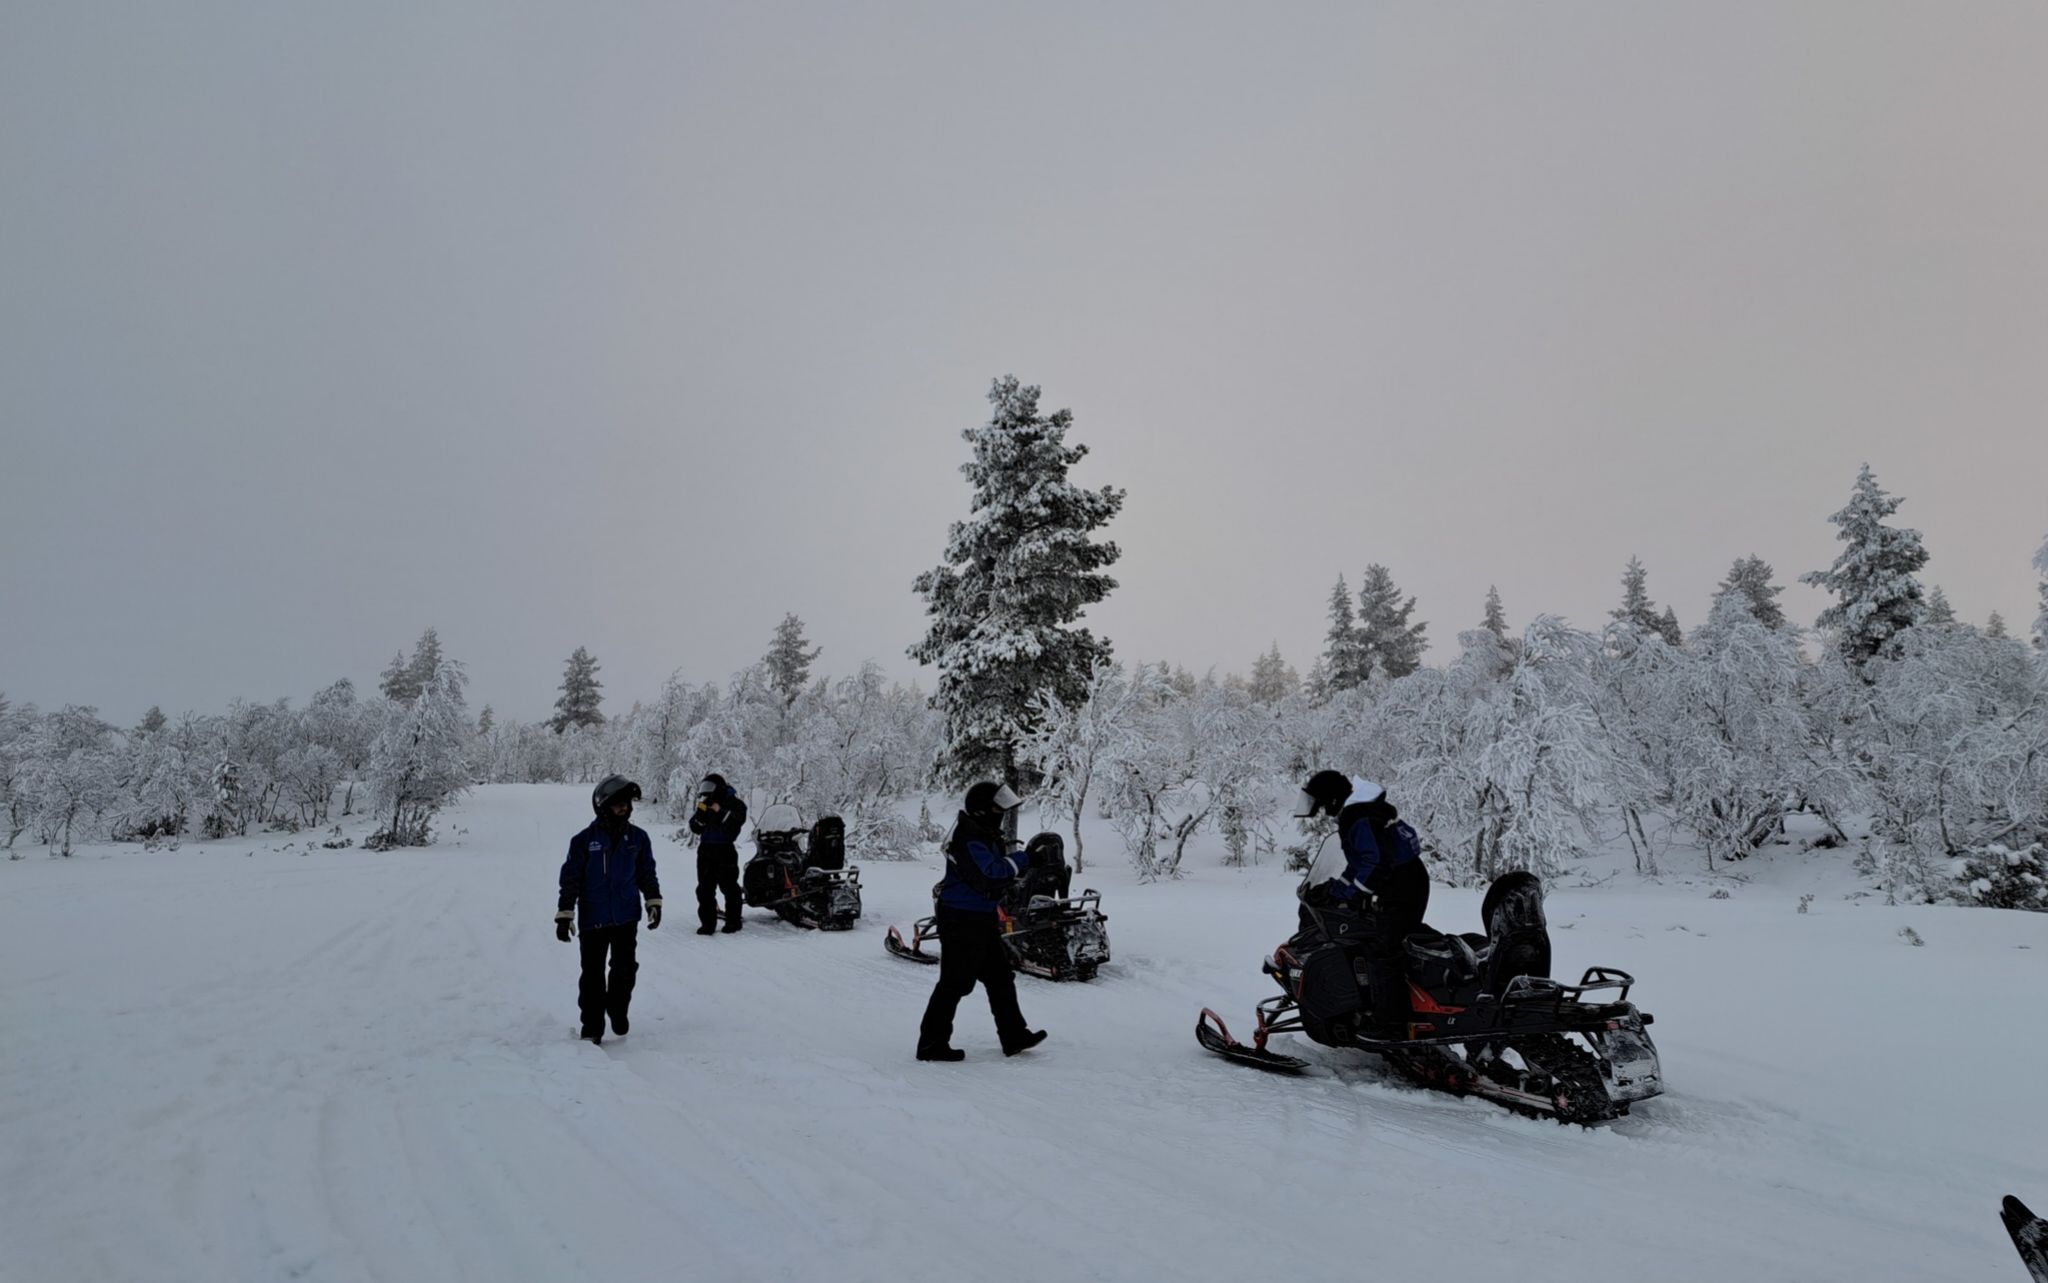 Motos de nieve se pueden practicar en muchas partes del mundo, pero con estos paisajes no. Ruta por Saariselkä con Lapland Safaris.